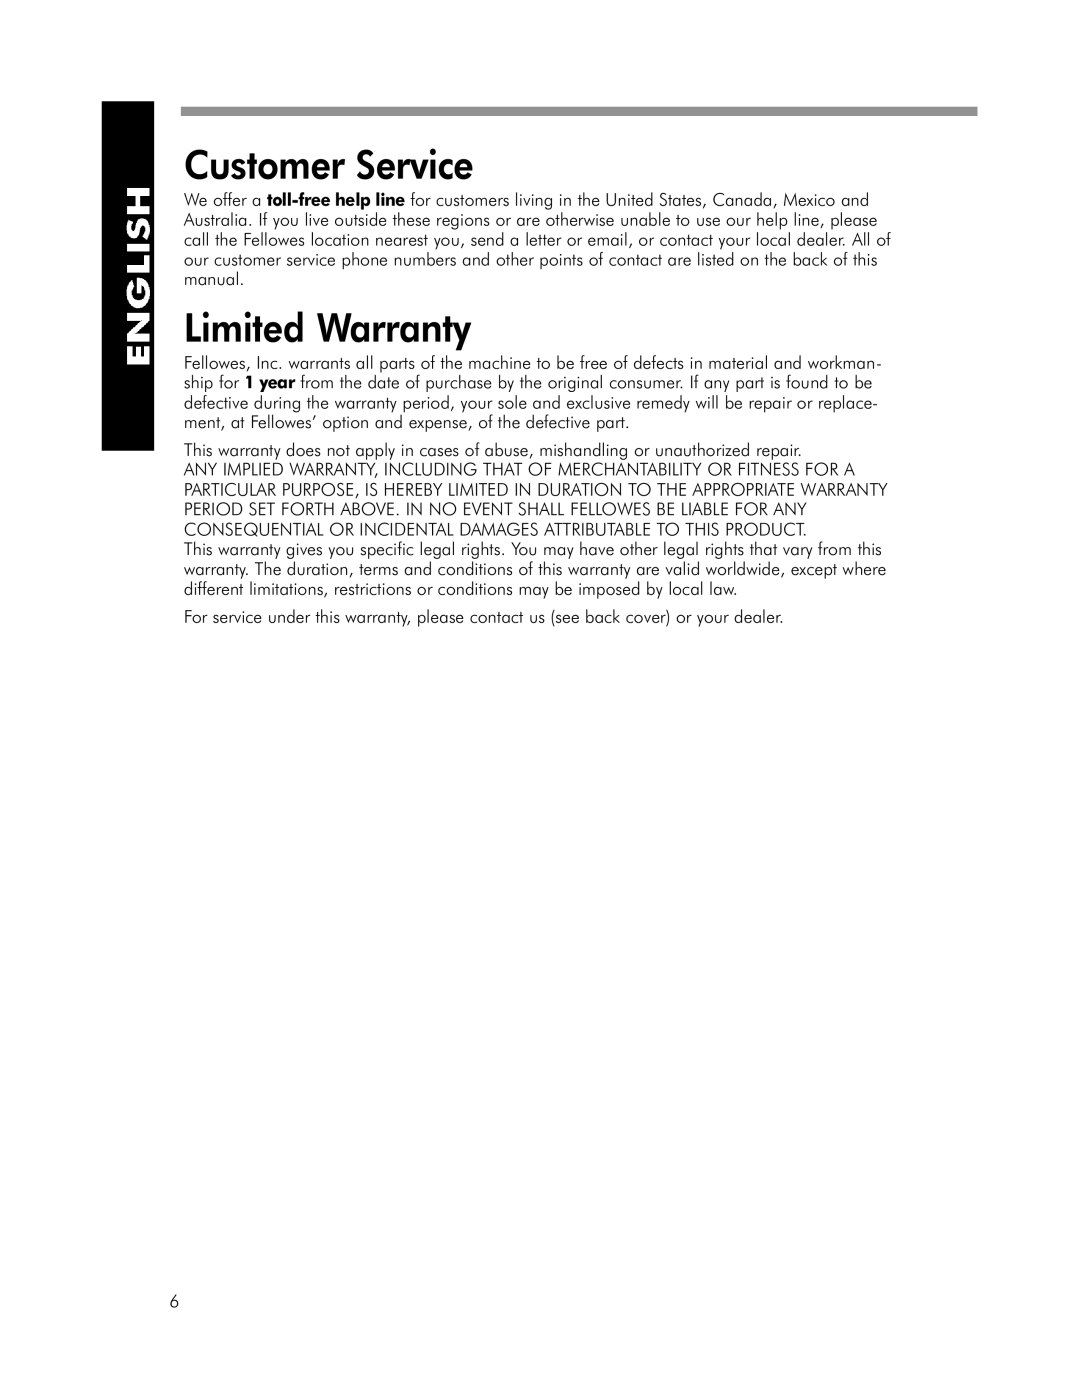 Fellowes SPL 95, SPL 125 manual Customer Service, Limited Warranty 